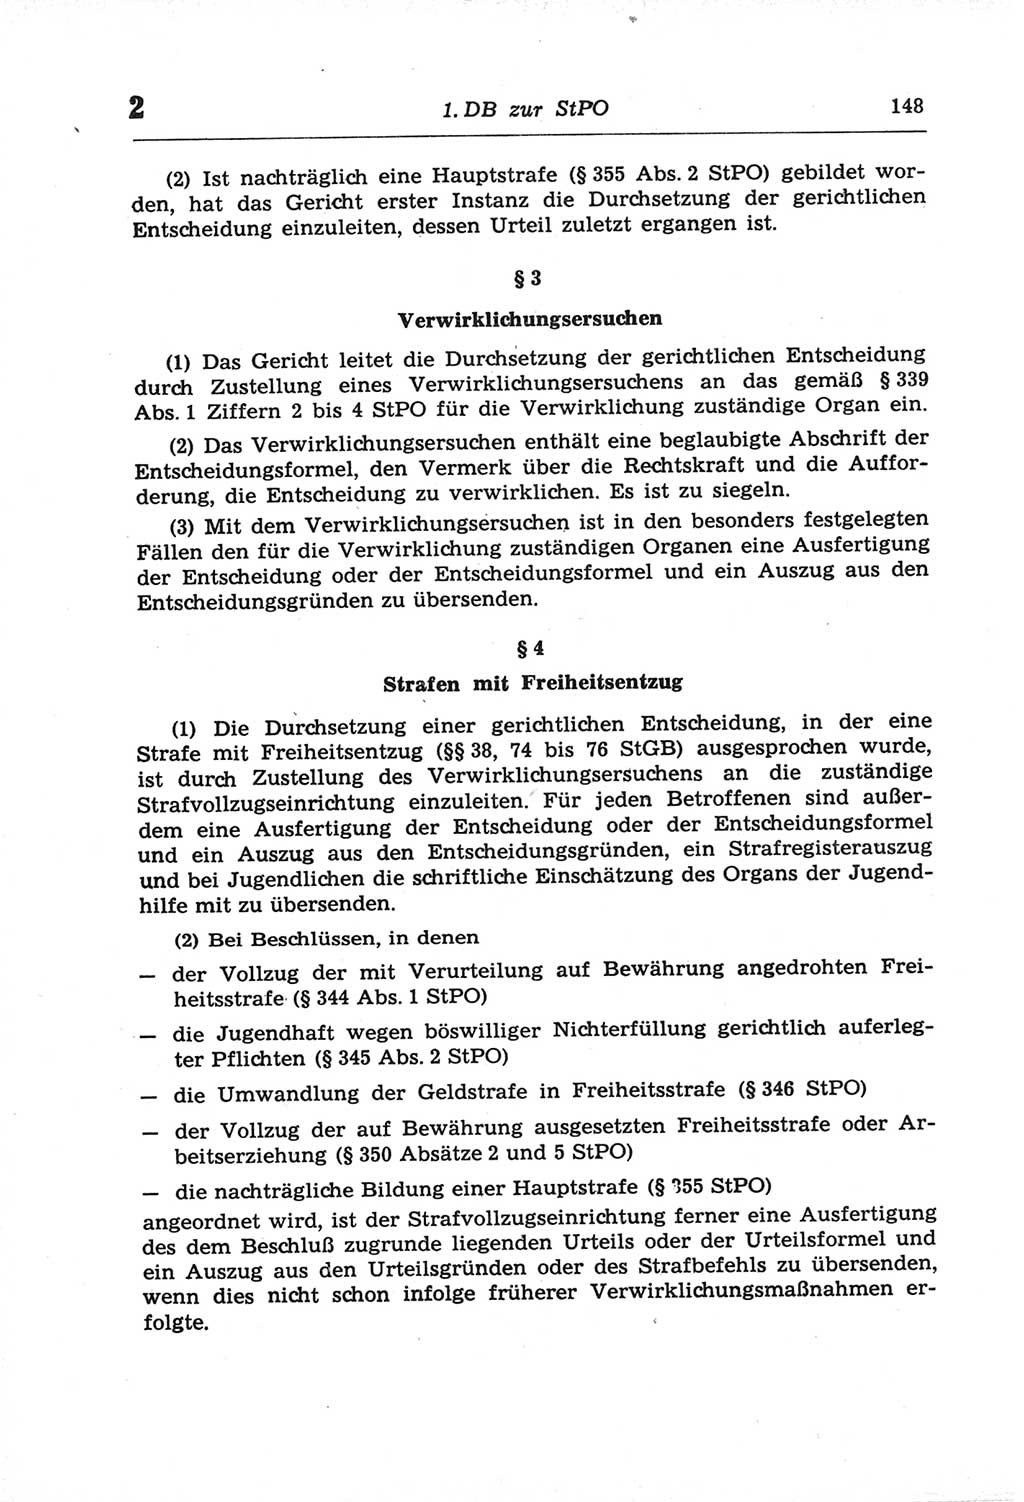 Strafprozeßordnung (StPO) der Deutschen Demokratischen Republik (DDR) und angrenzende Gesetze und Bestimmungen 1968, Seite 148 (StPO Ges. Bstgn. DDR 1968, S. 148)